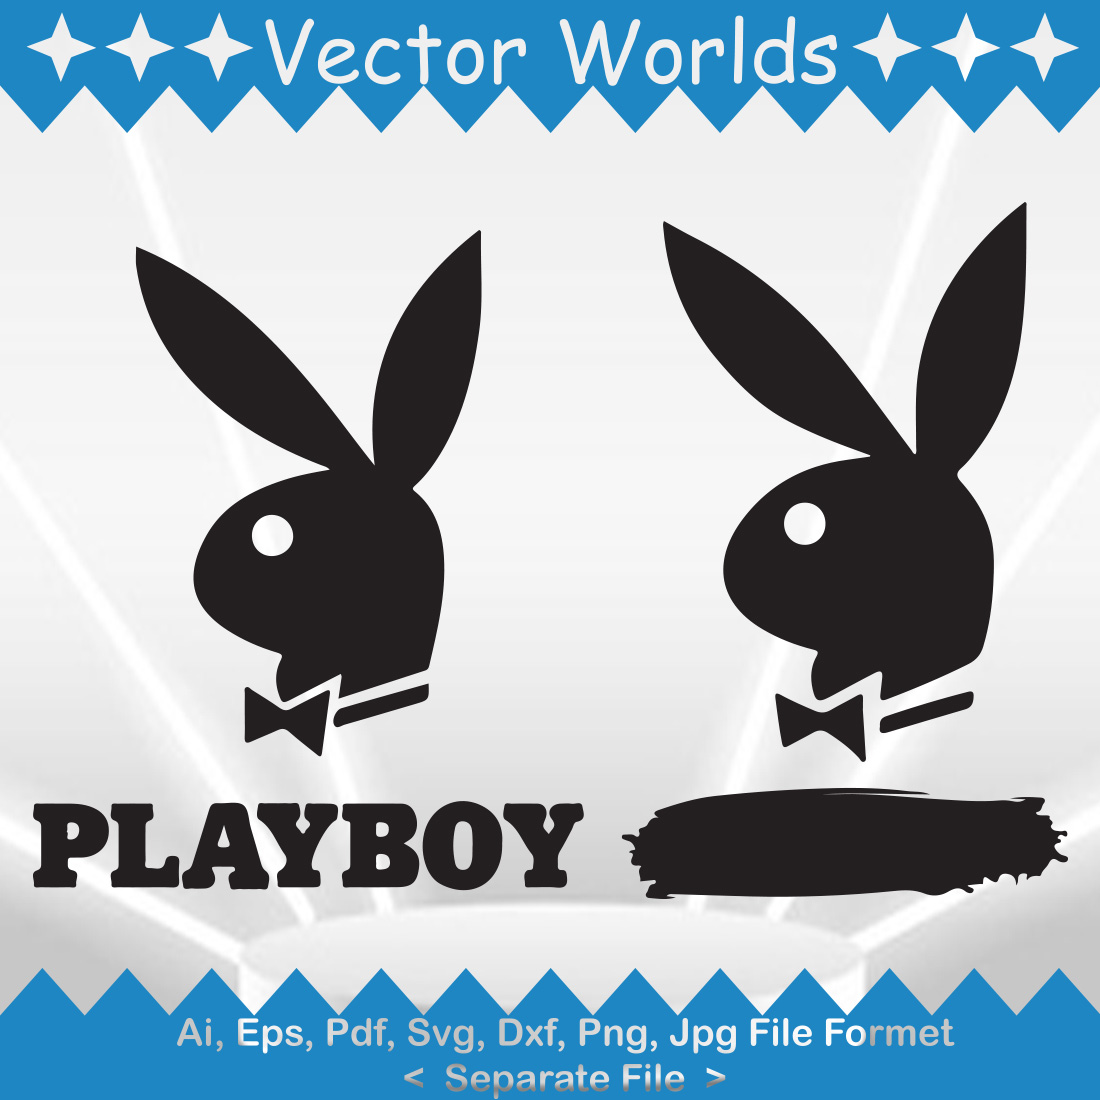 Playboy - Steve Fonti